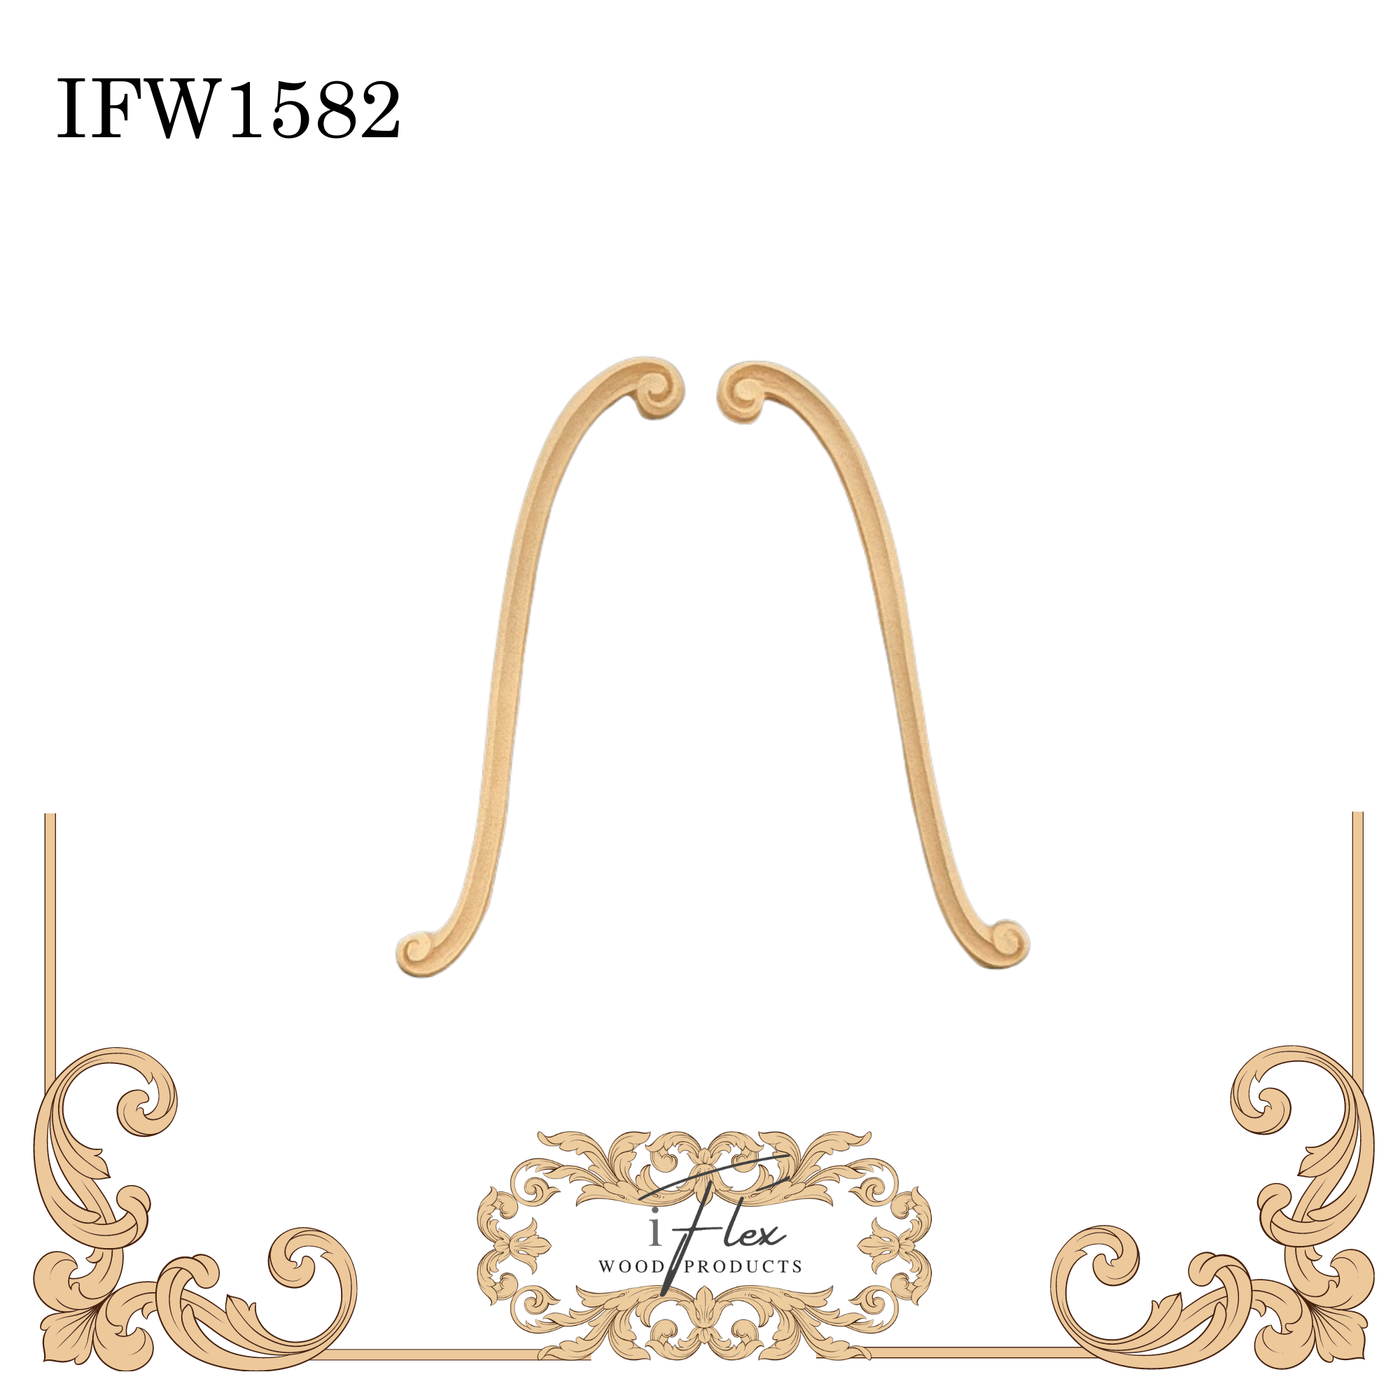 IFW 1582